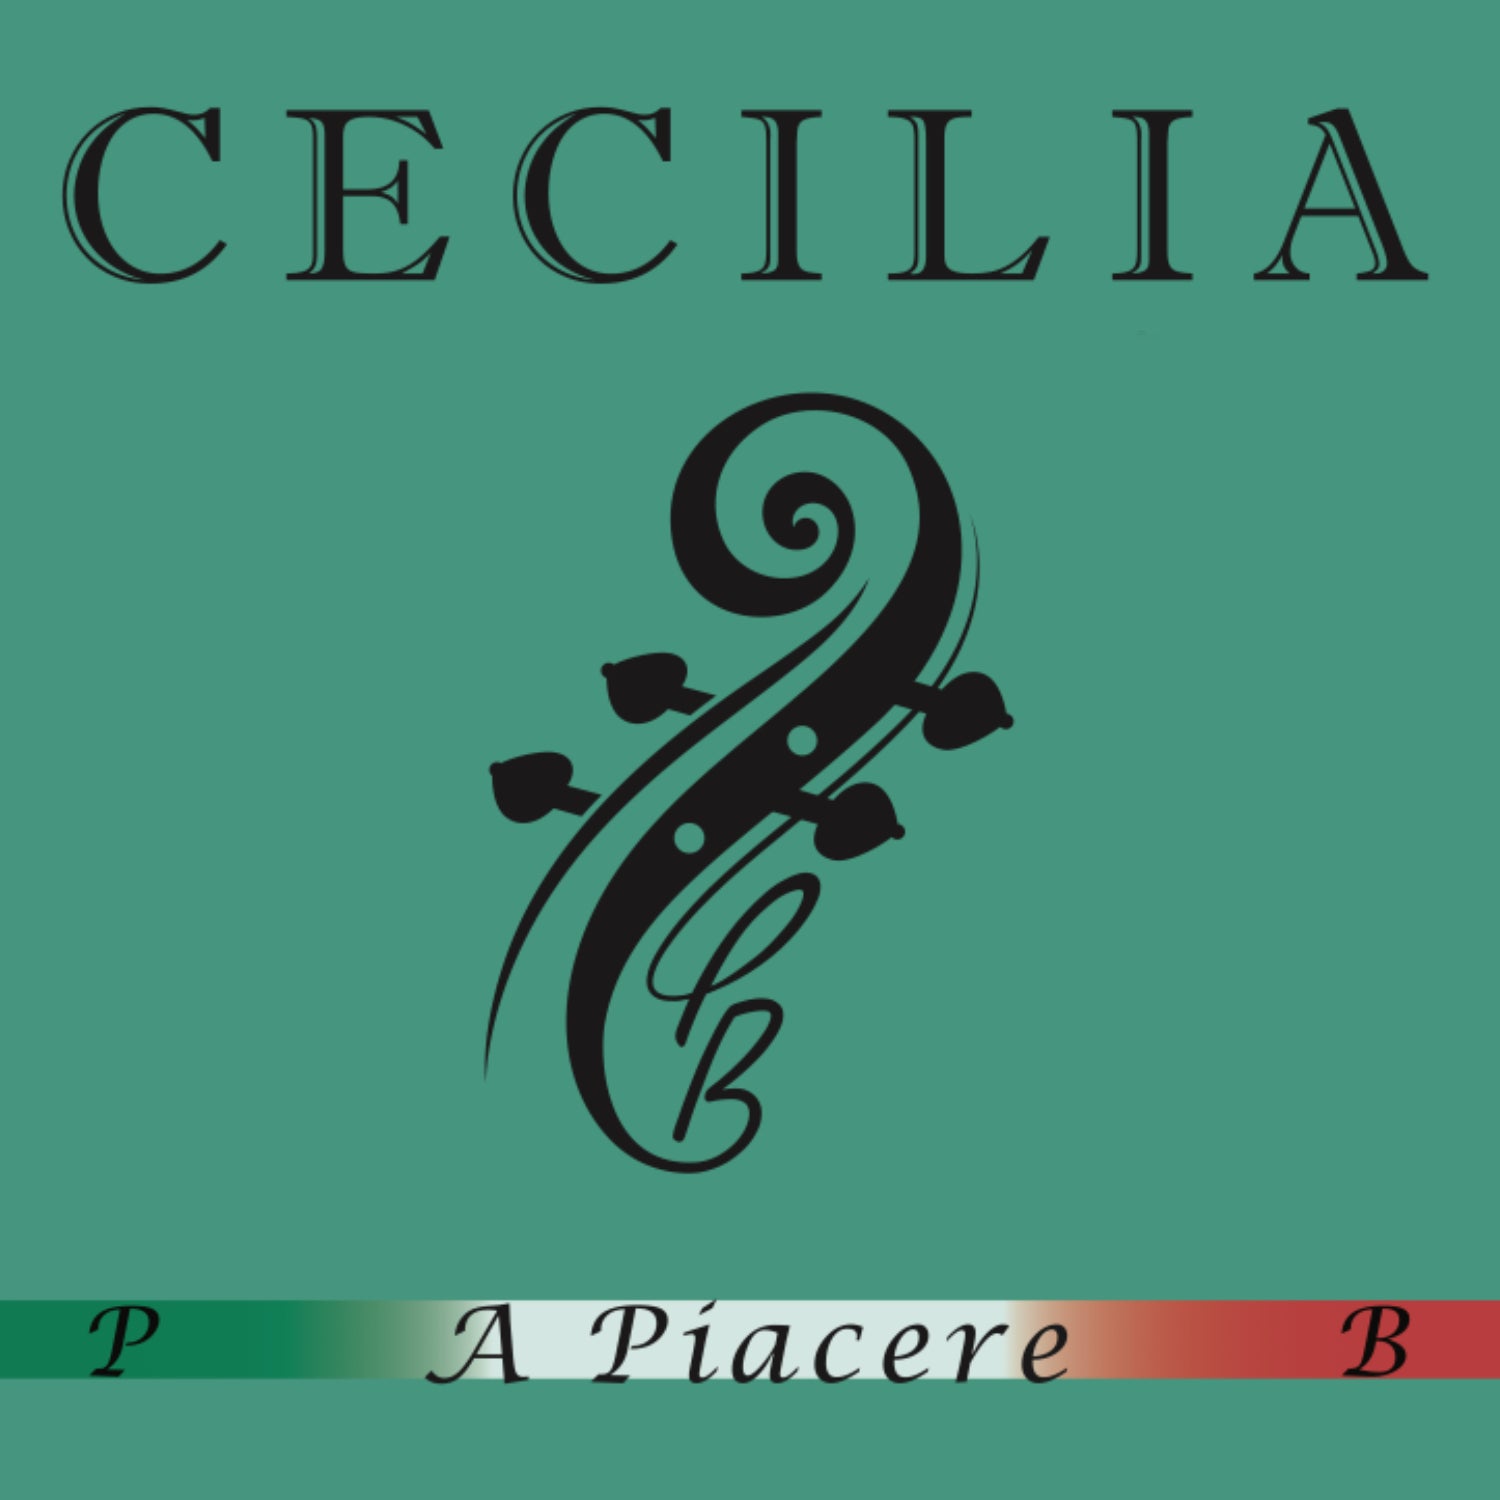 CECILIA A. Piacere Violin